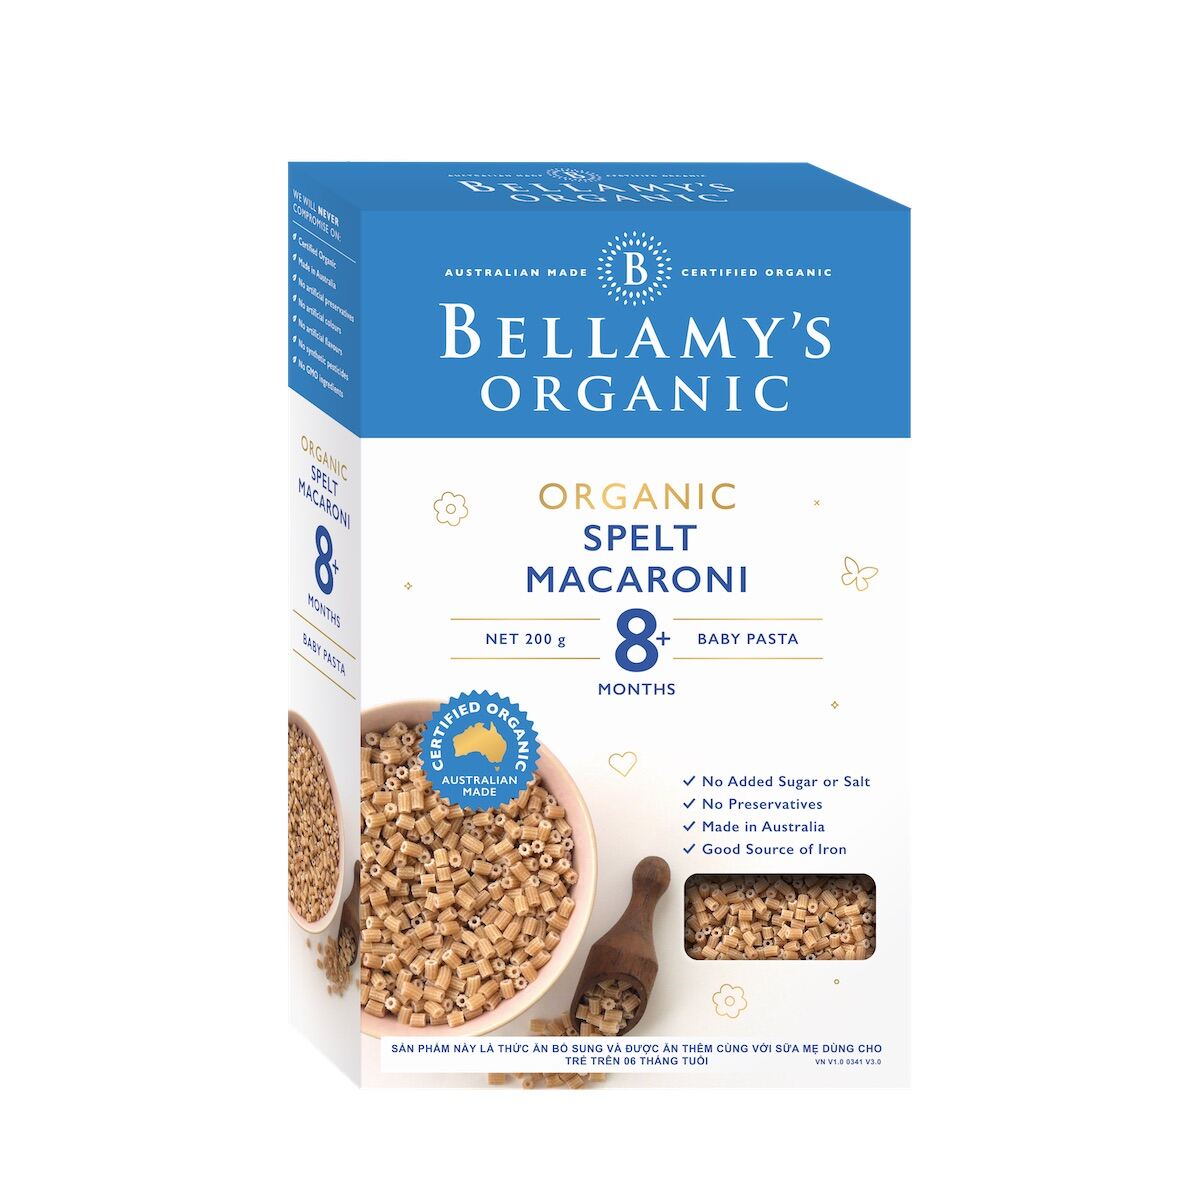 Nui dinh dưỡng hữu cơ hình ống từ lúa mì bellamy s organic